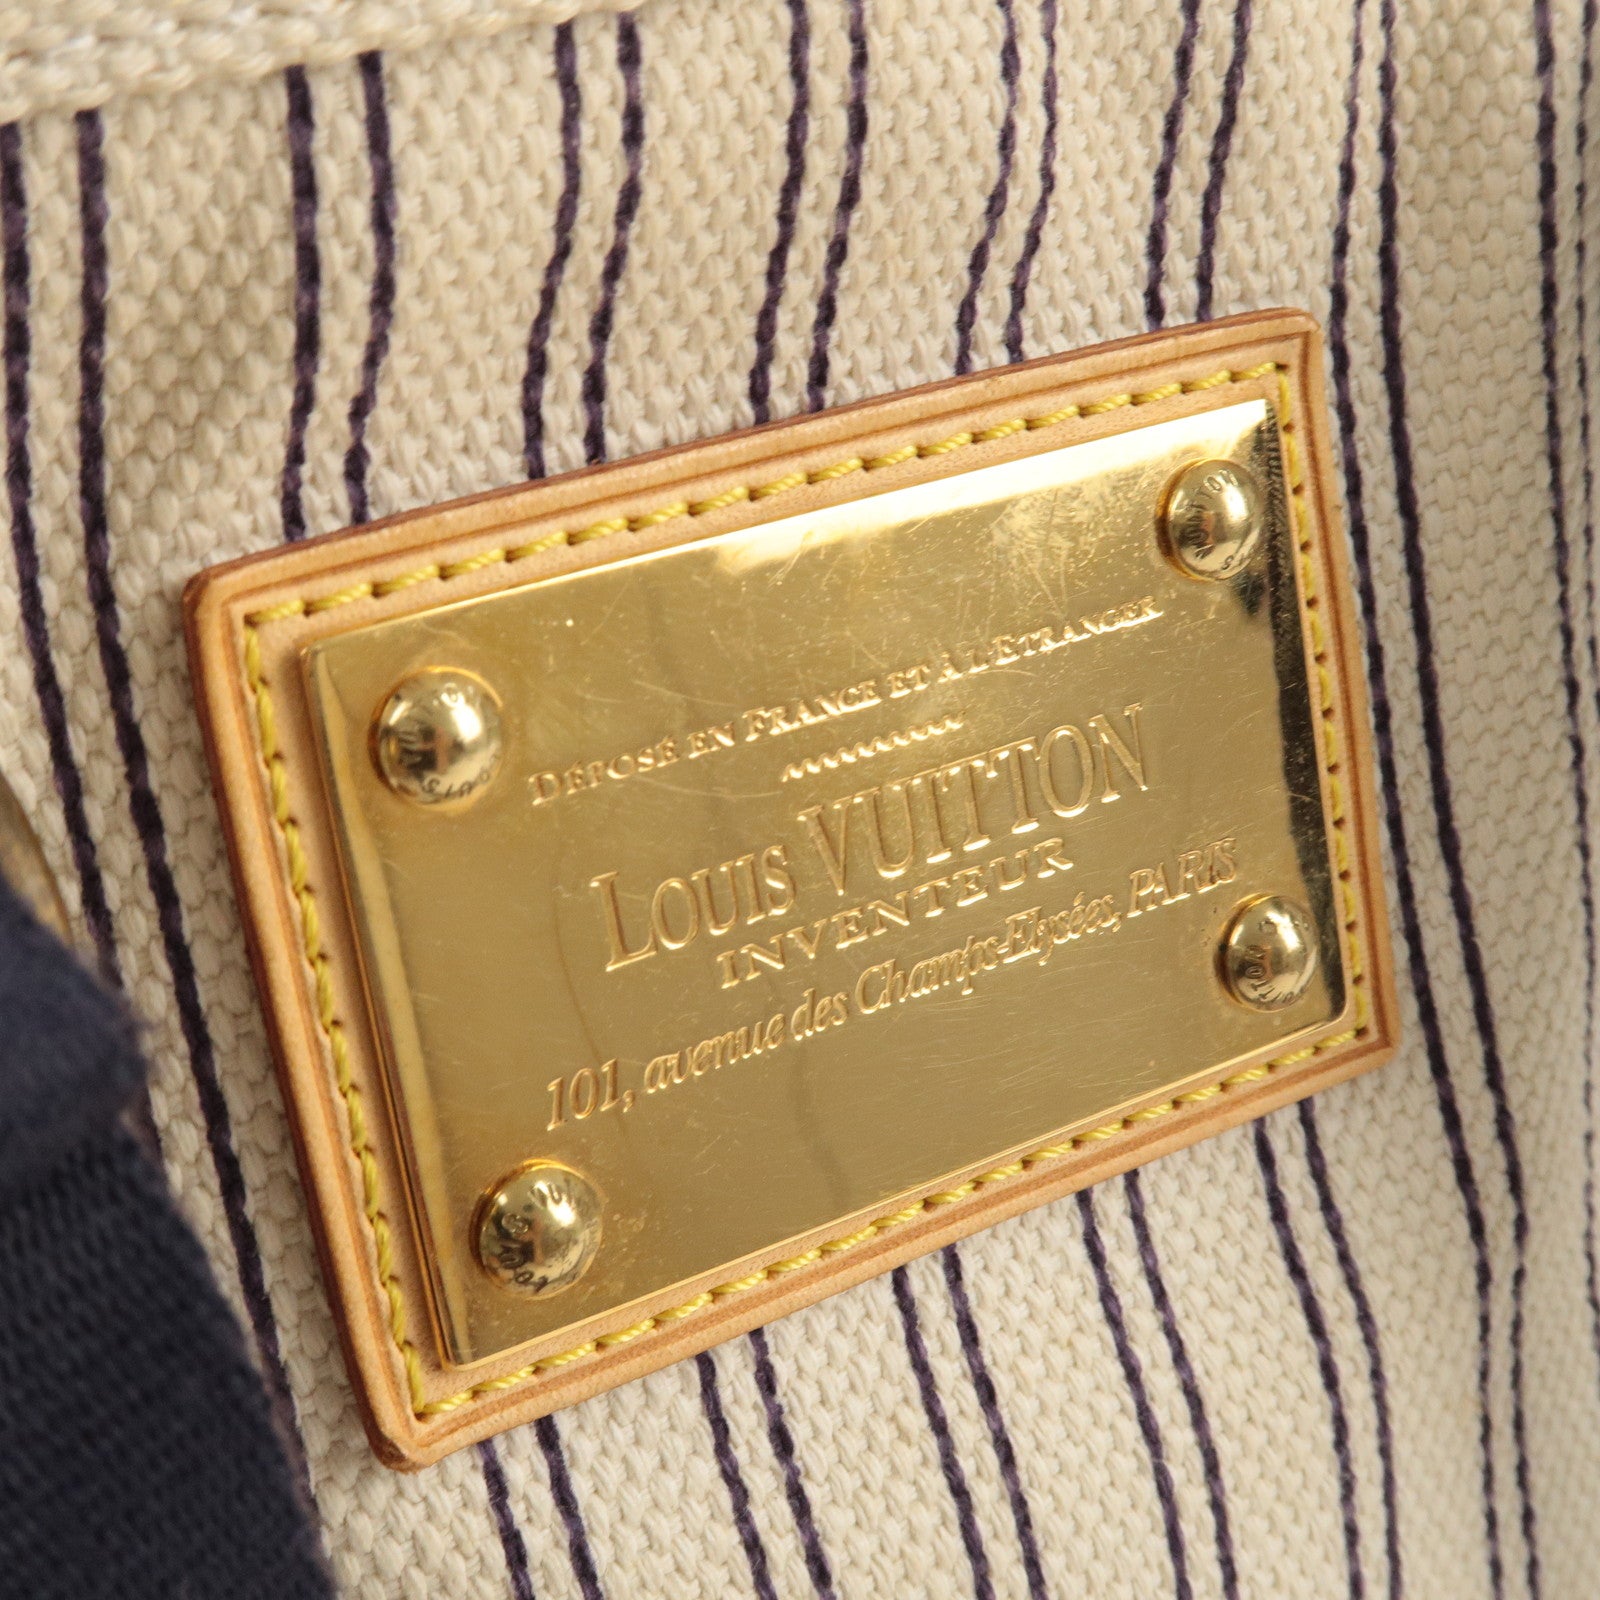 Louis Vuitton Navy Striped Canvas Antigua Cabas PM Bag - Yoogi's Closet